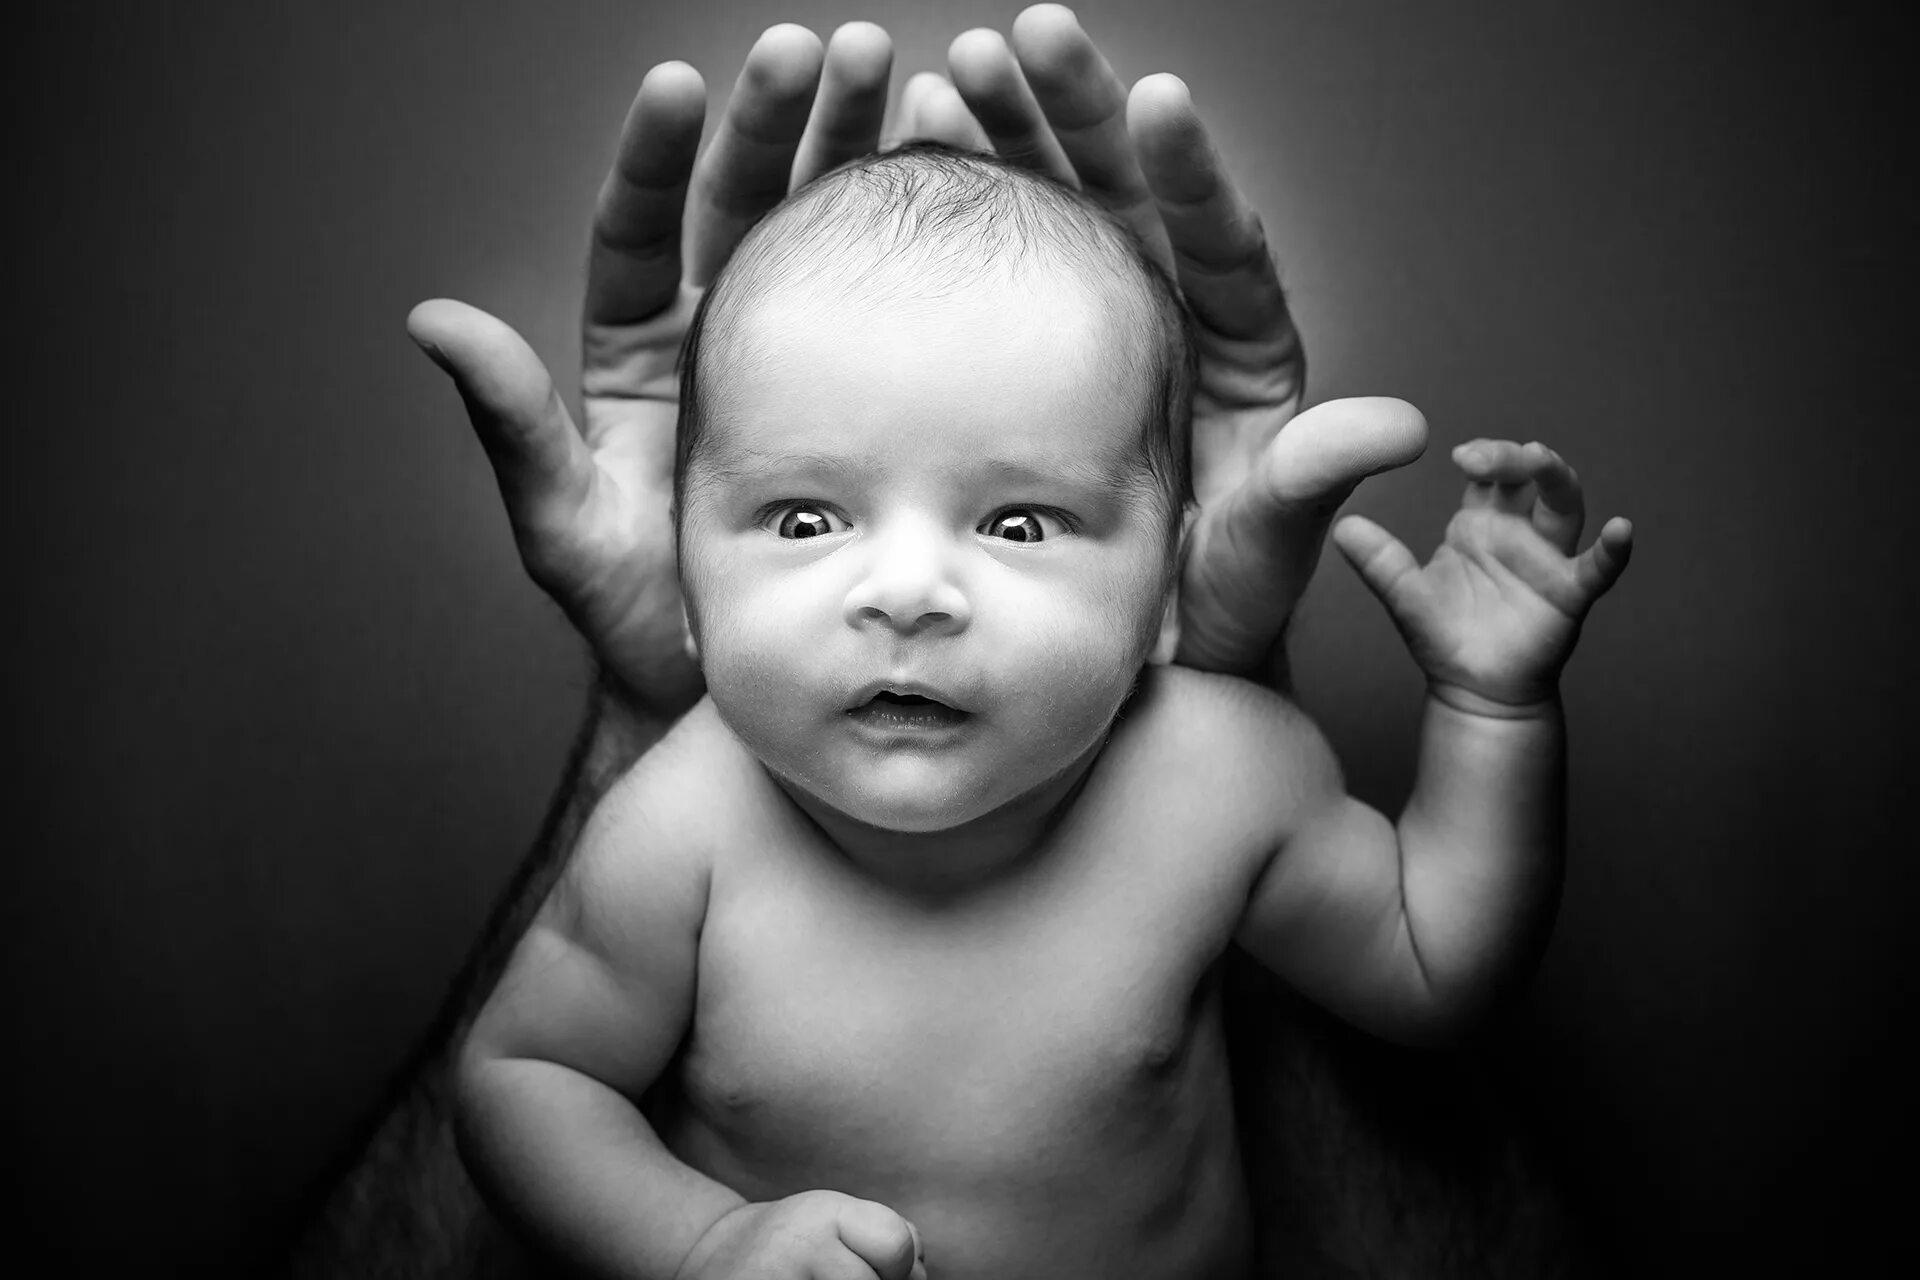 Картинки для малышей. Newborn Baby. Картинки про детей смыслю. Newborn Baby hand. Включи картинку малыша